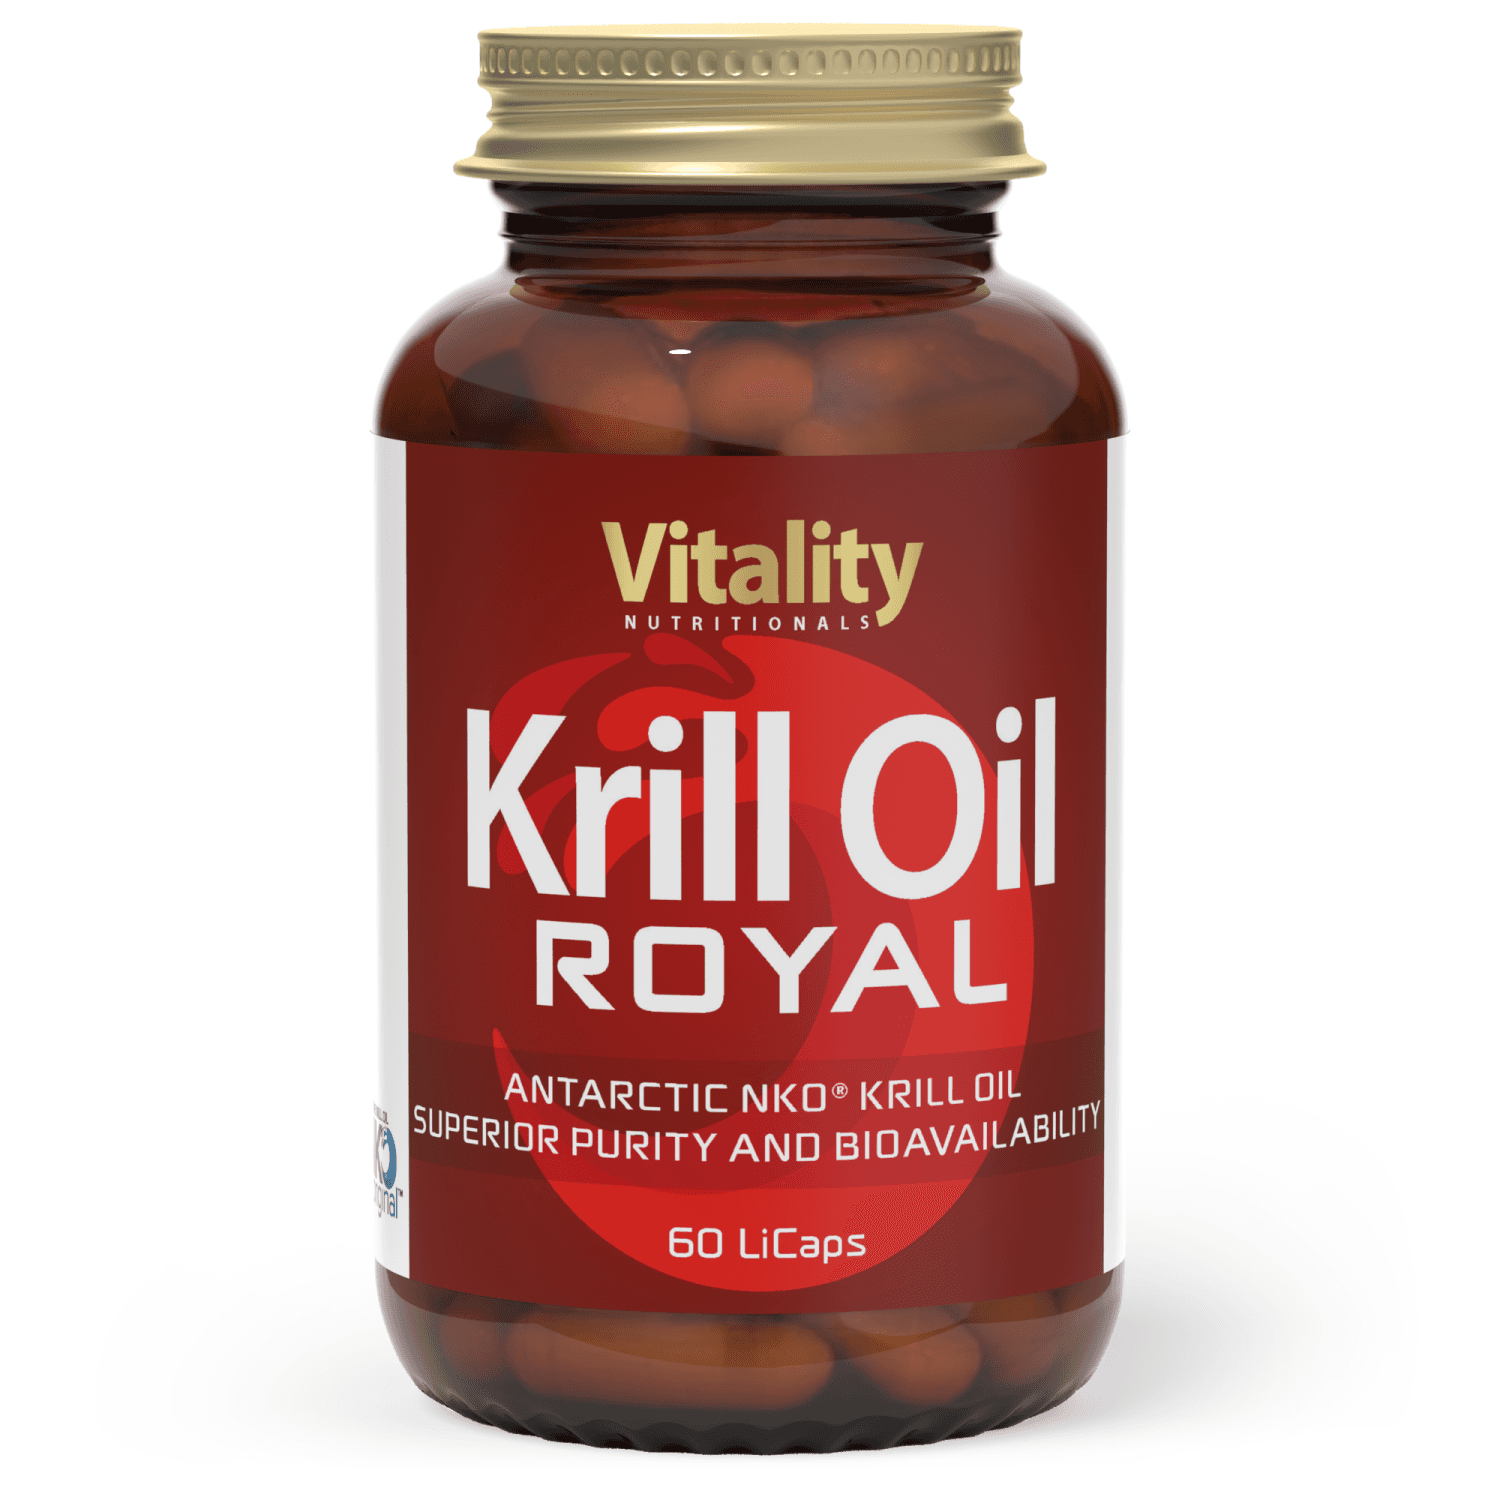 Krilloil Royal - 60 capsules